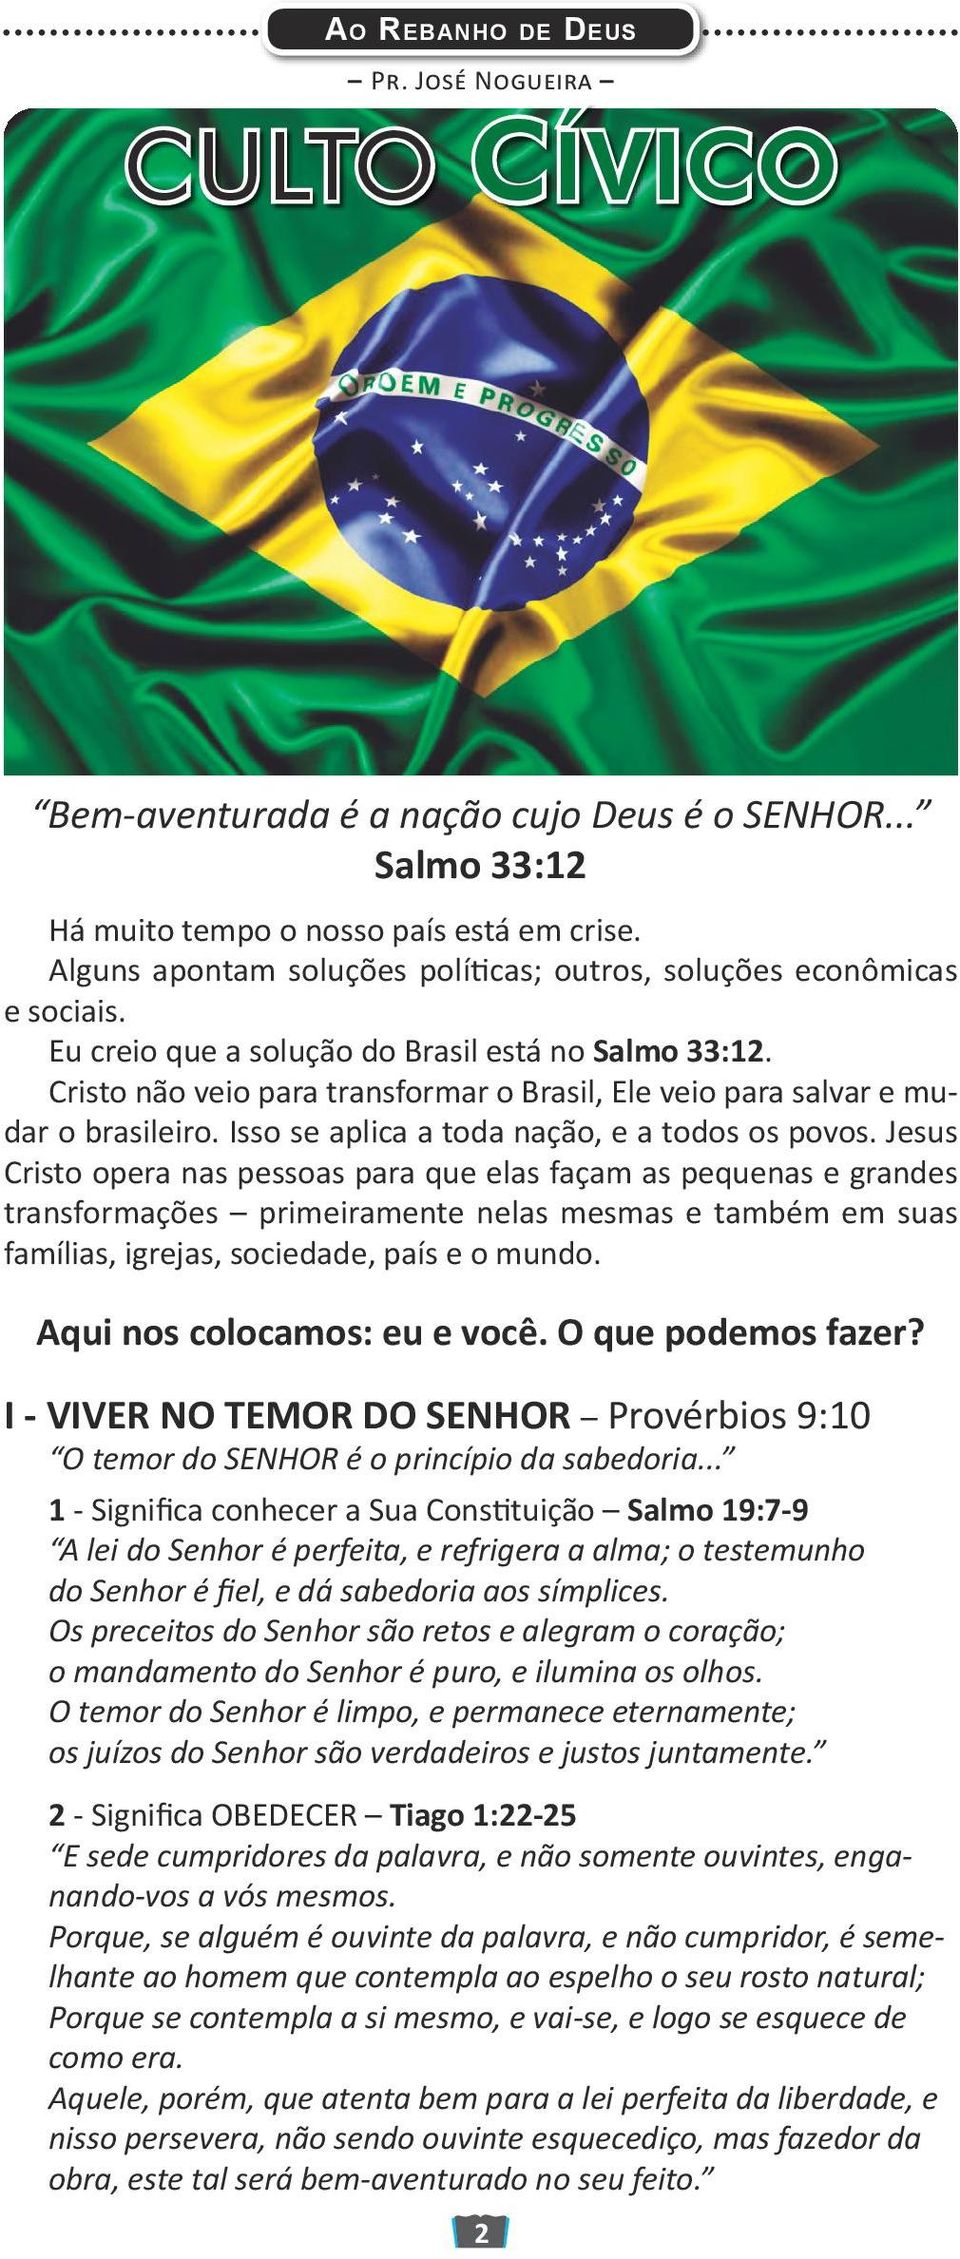 Cristo não veio para transformar o Brasil, Ele veio para salvar e mudar o brasileiro. Isso se aplica a toda nação, e a todos os povos.